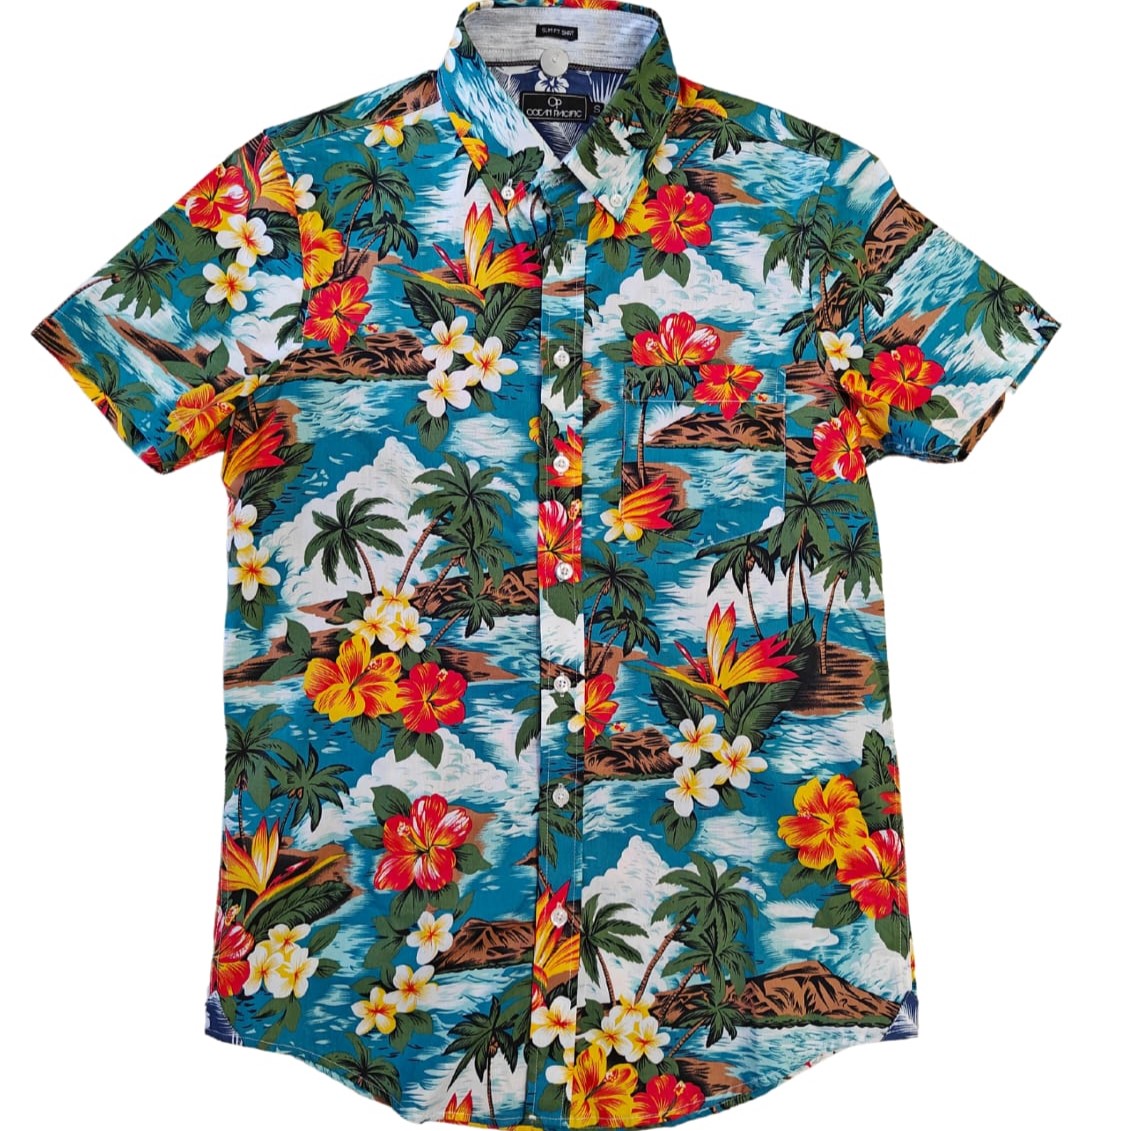 Camisa Hawaiana Pacific Slim Fit - Tienda Online, Skate, Surf, Wakeboard, Maui Watersports